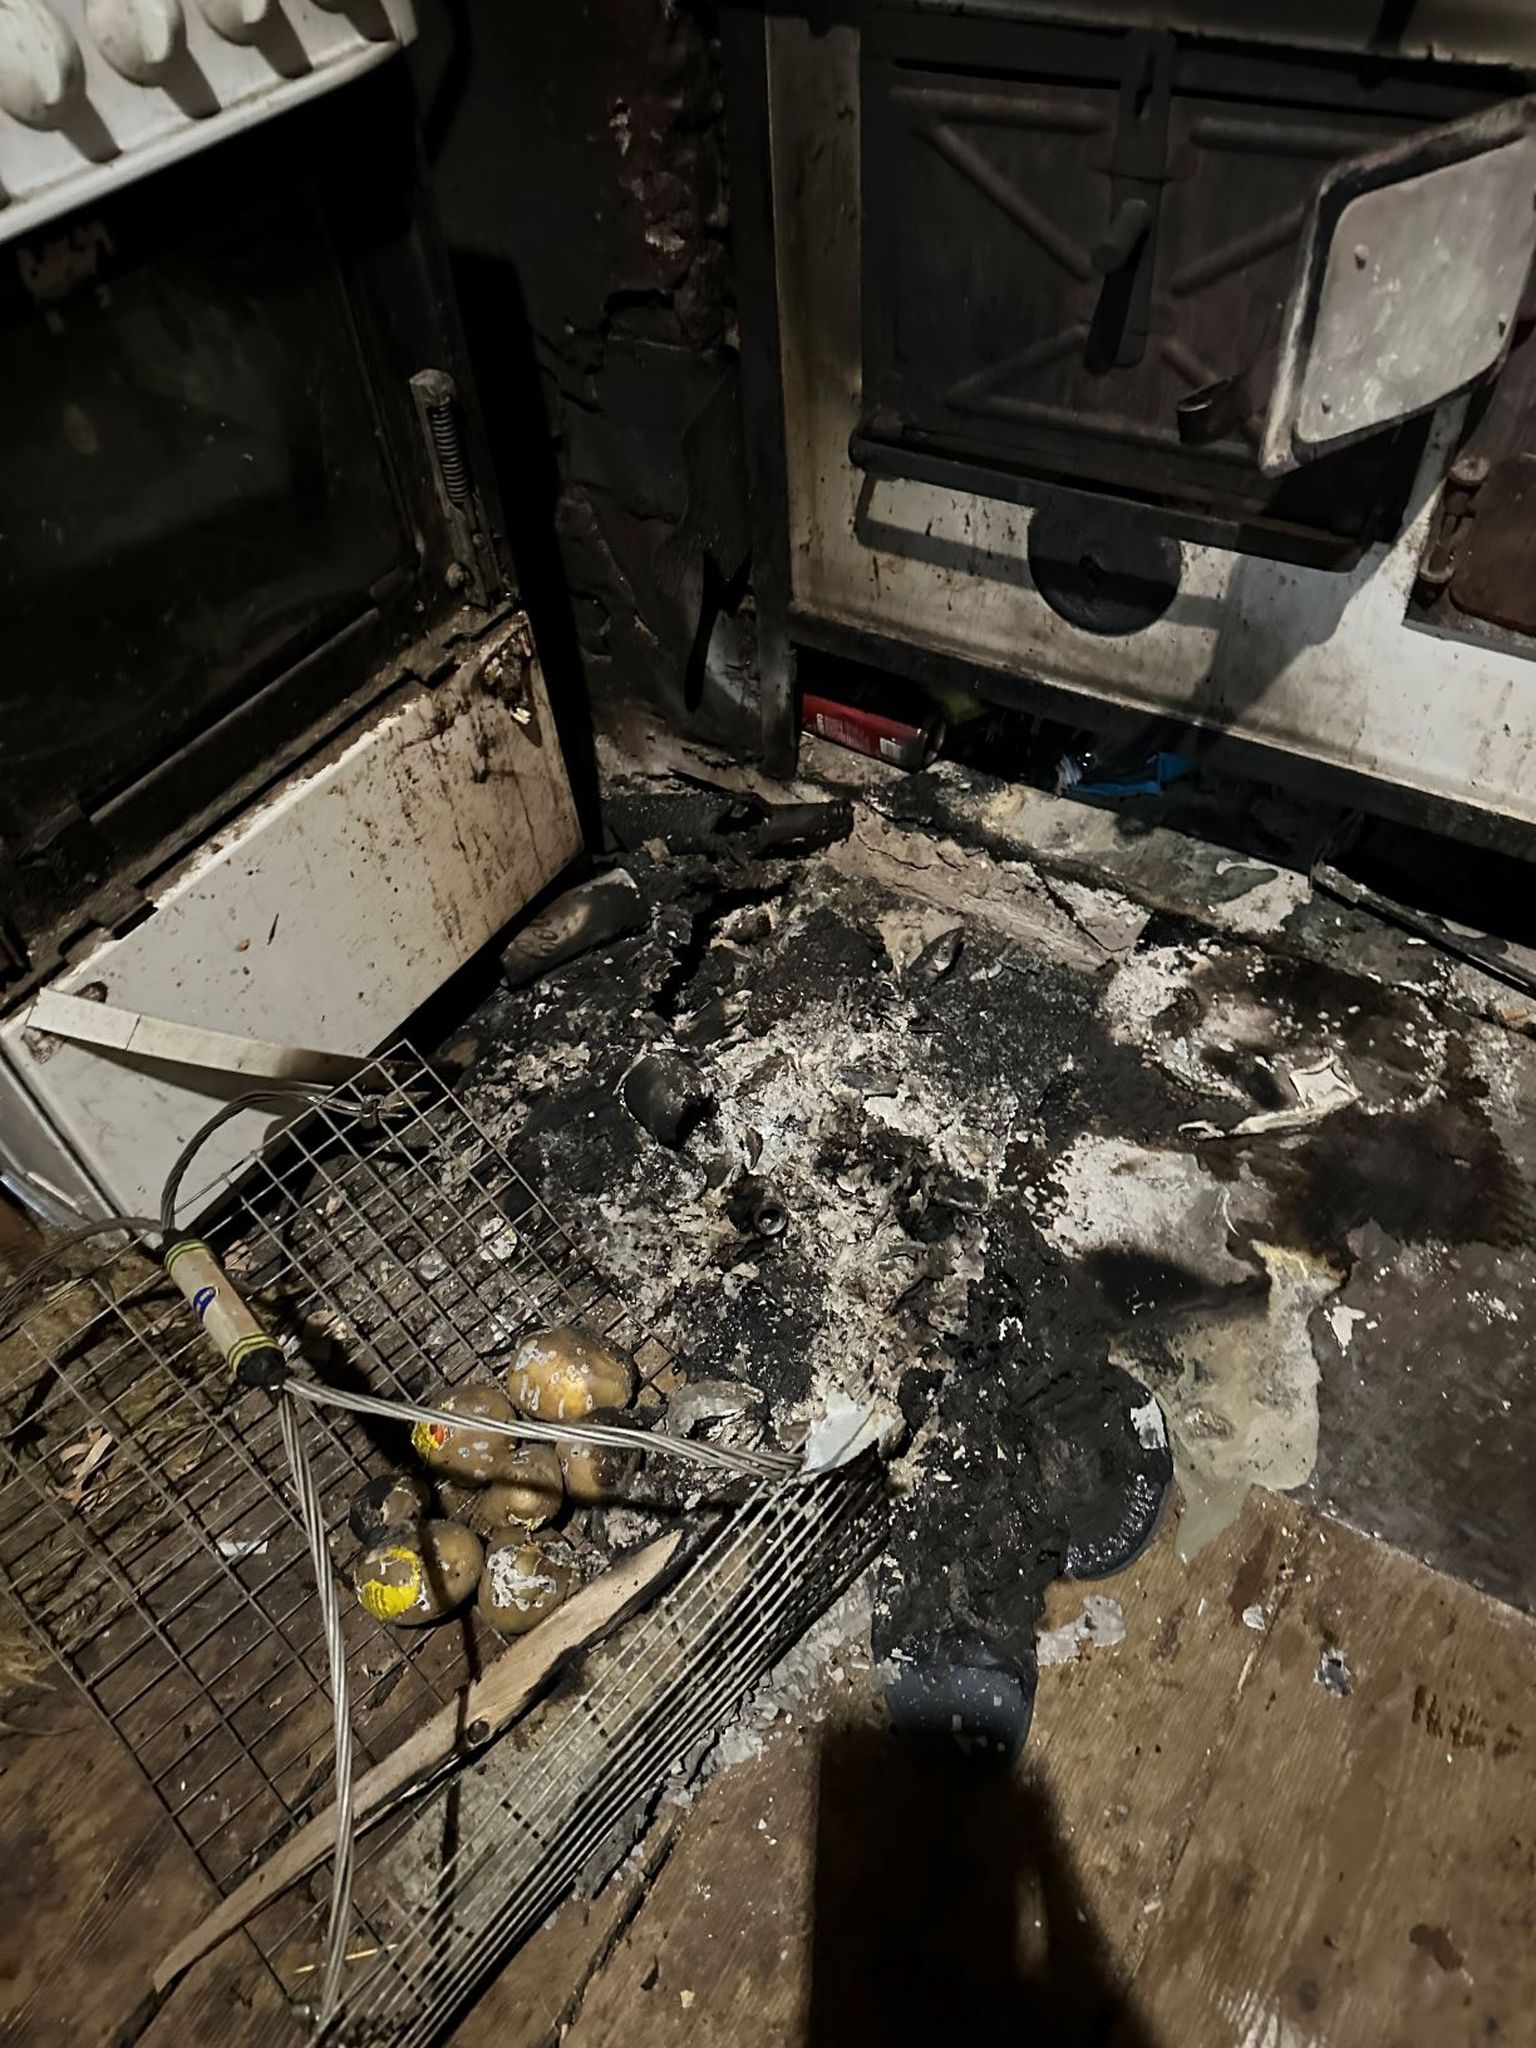 Возгорание началось перед плитой, где загорелось пластиковое ведро. Хозяин дома не успел потушить ведро, потому что потерял сознание и умер, надышавшись угарным газом.